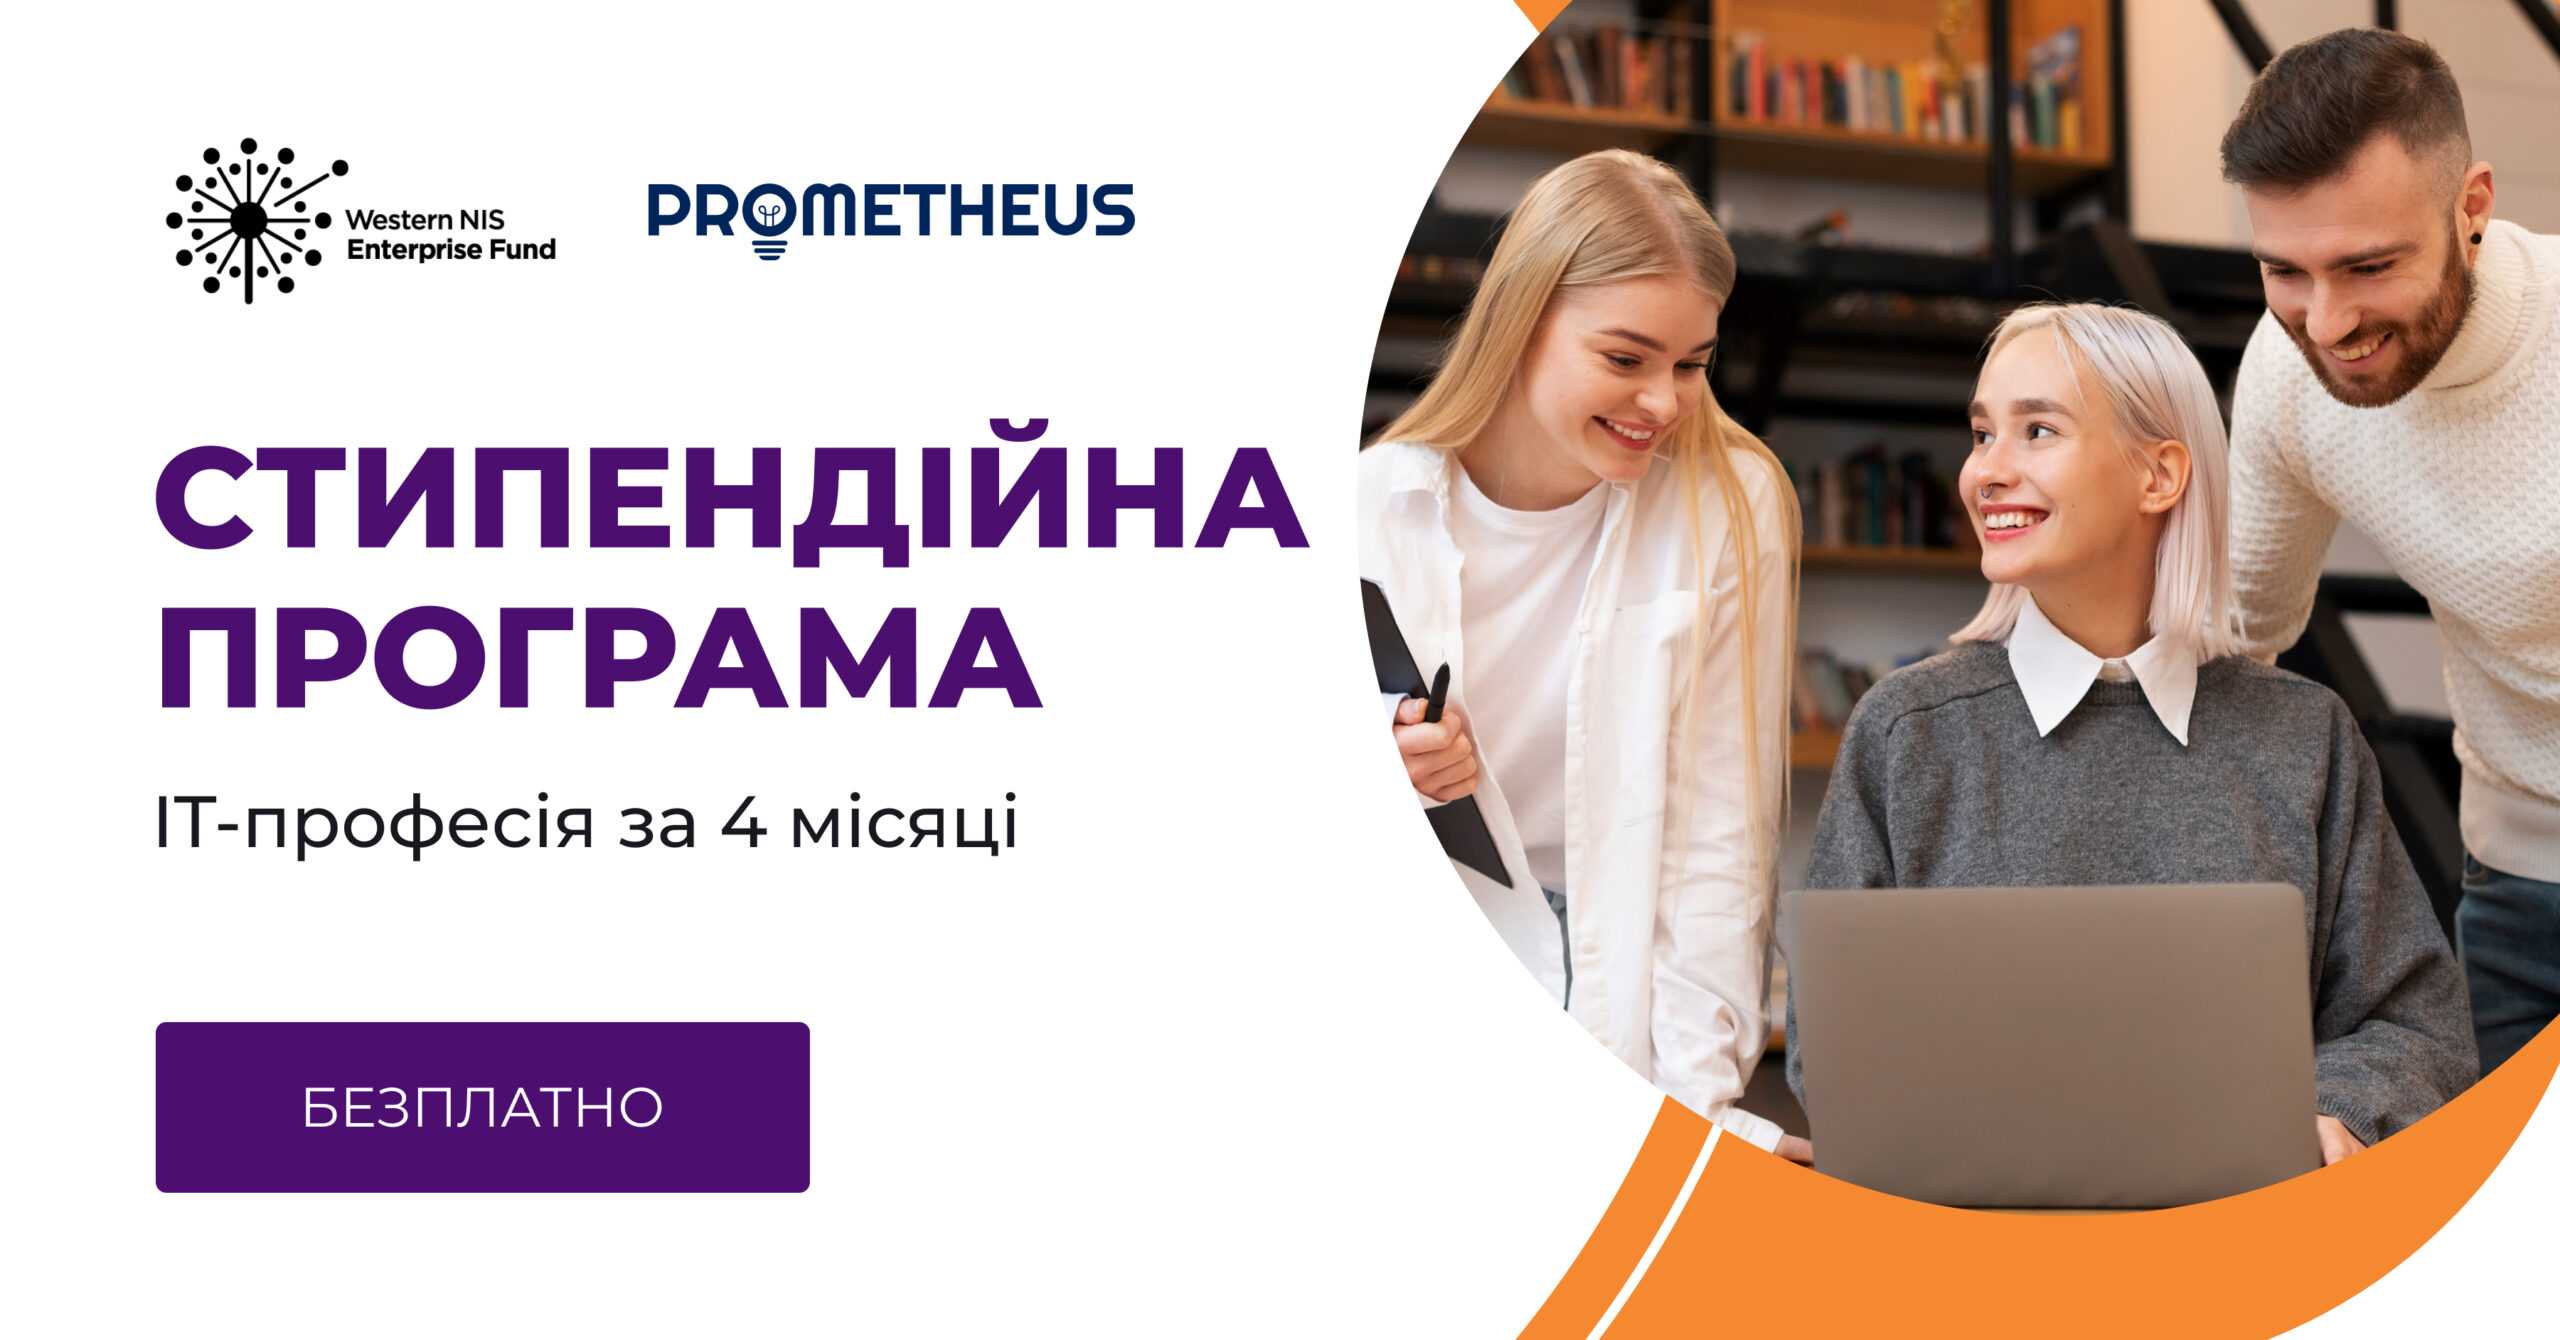 1000 стипендій на IT-курси Prometheus у партнерстві з WNISEF: безплатне навчання на програмах, створених у партнерстві з GlobalLogic, Ciklum та найкращими фахівцями галузі